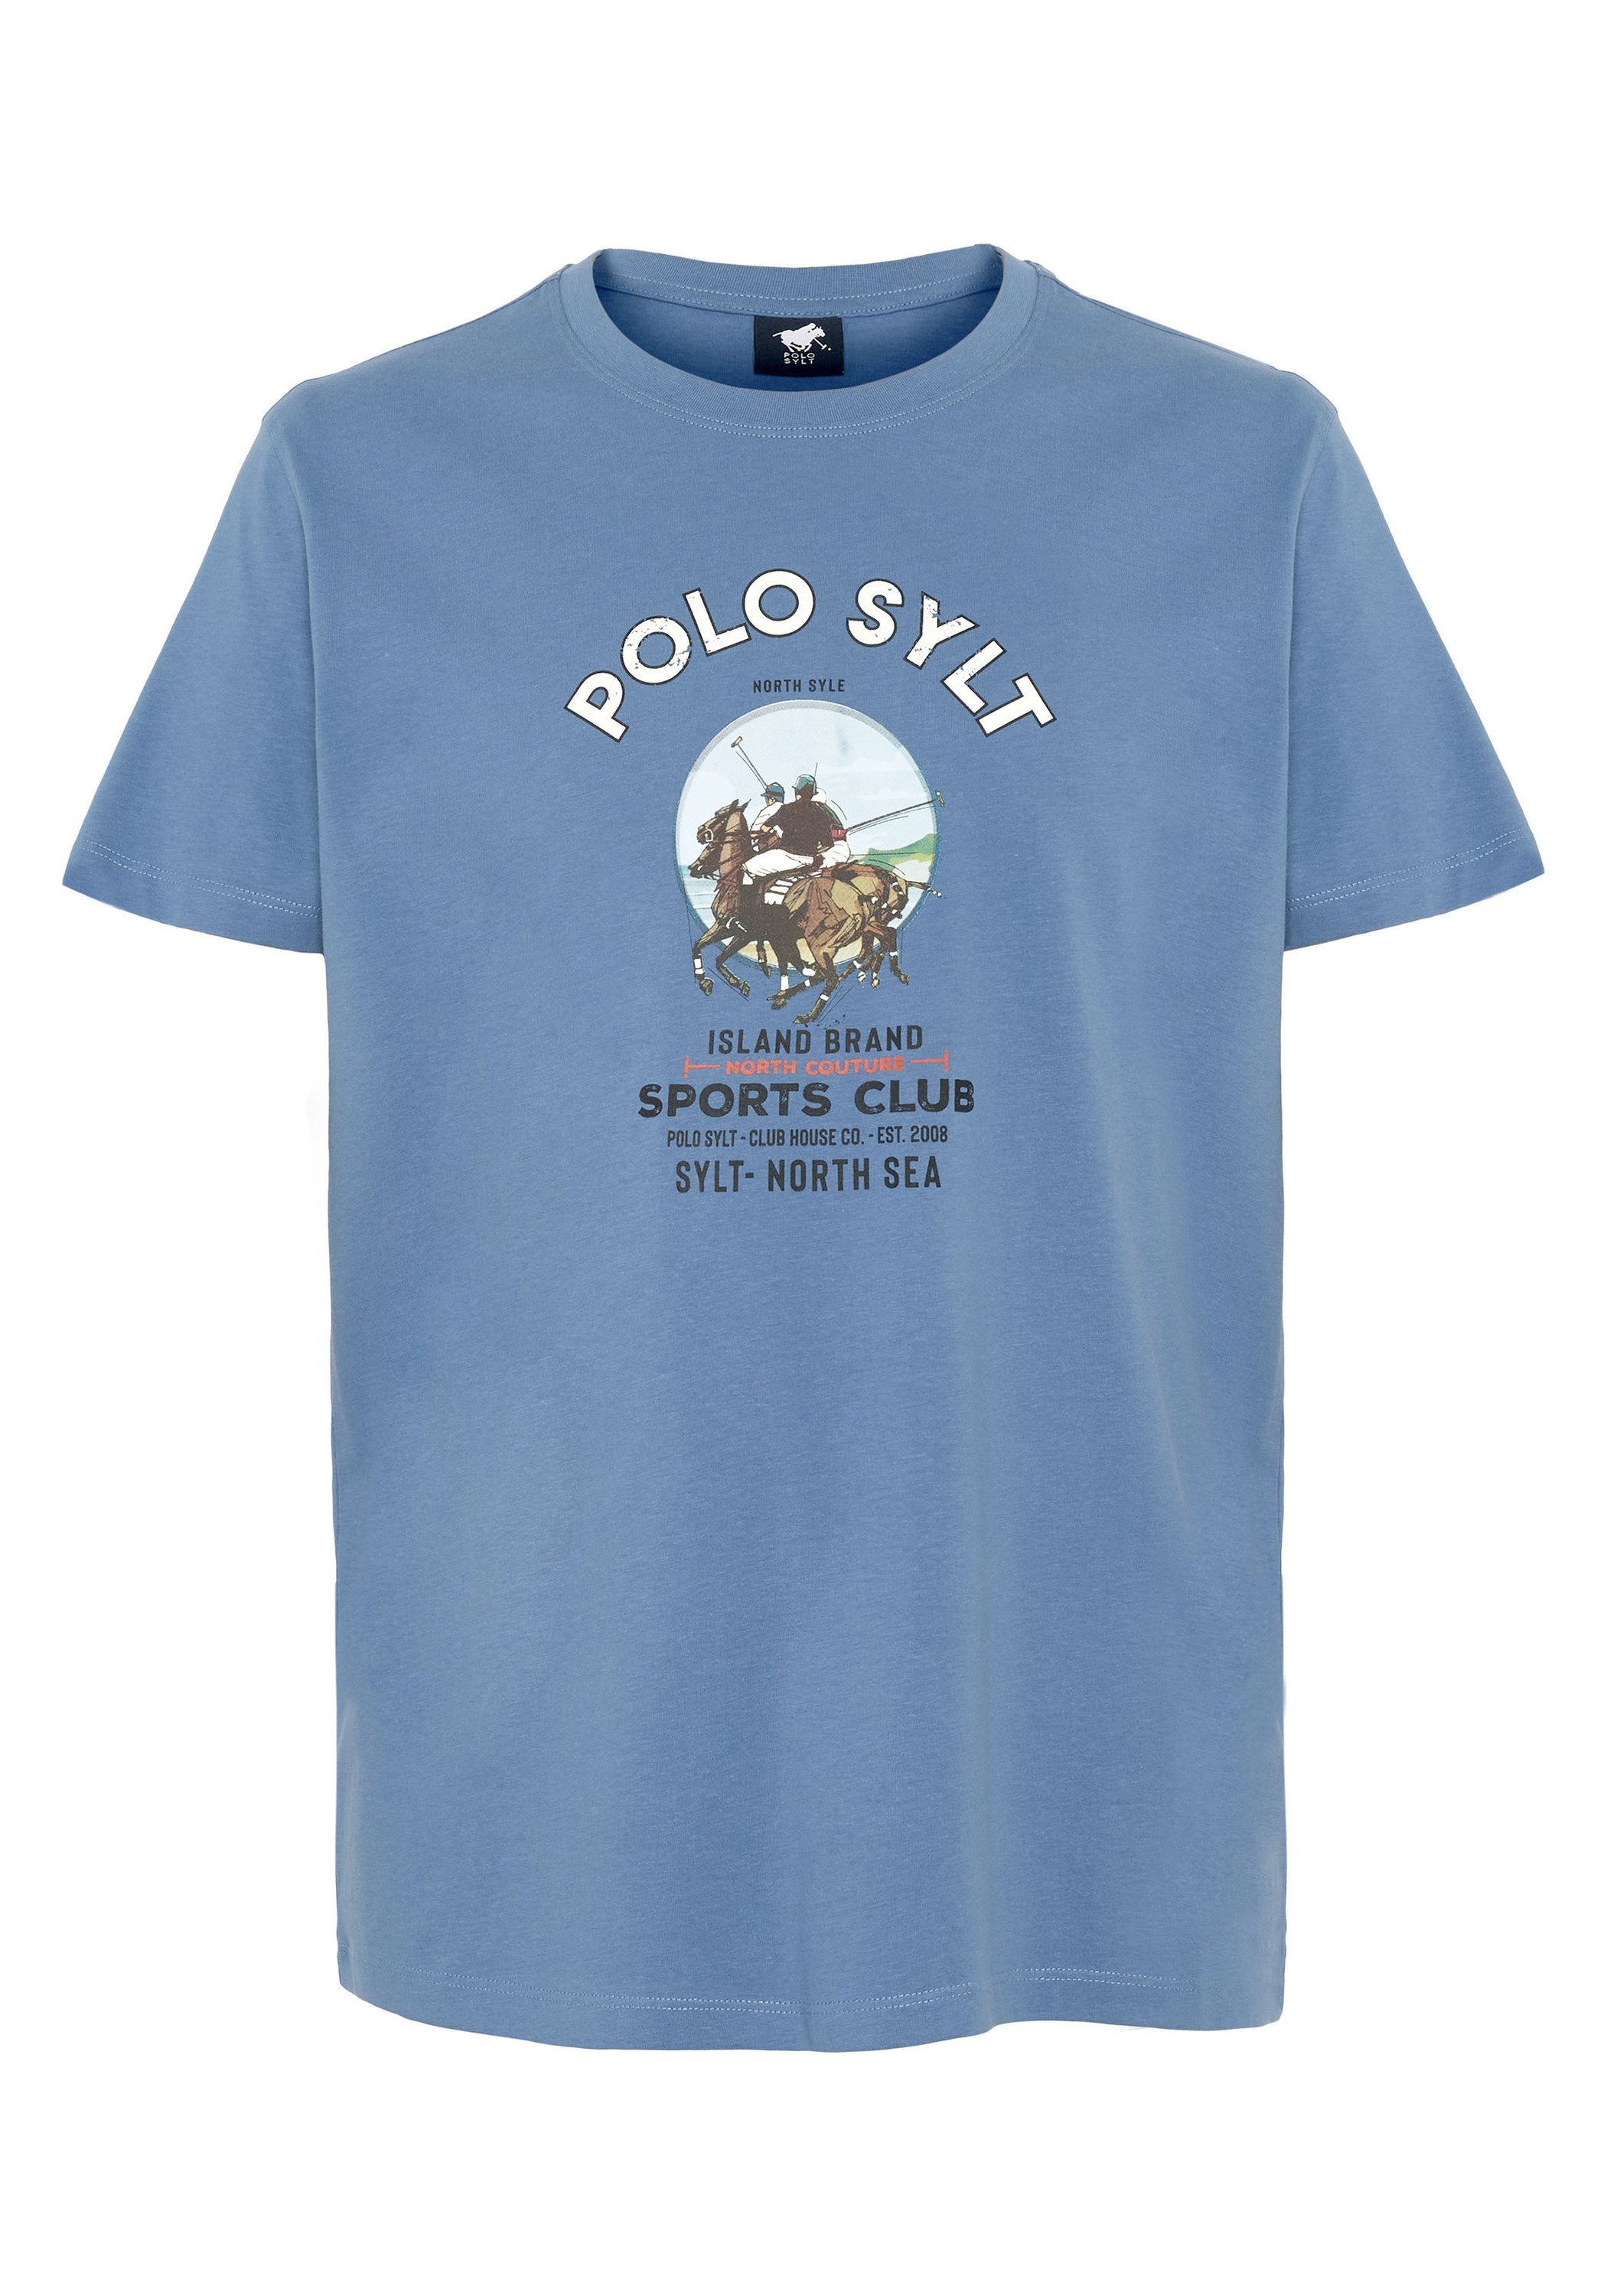 Polo Sylt Print-Shirt mit Polosport-Print